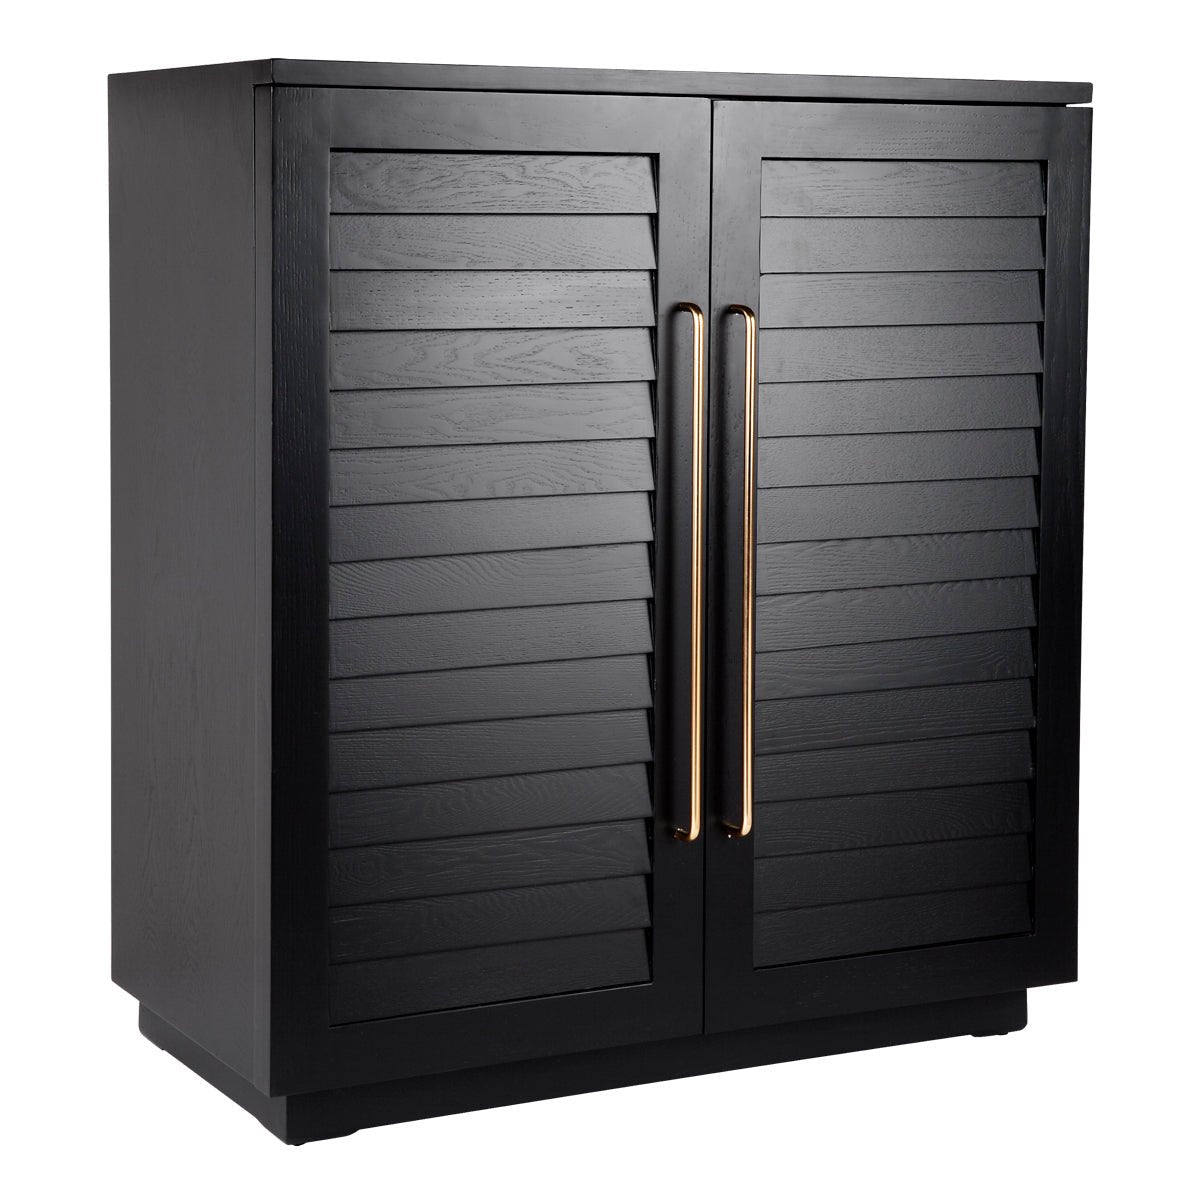 Black bar cabinet with gold door handles